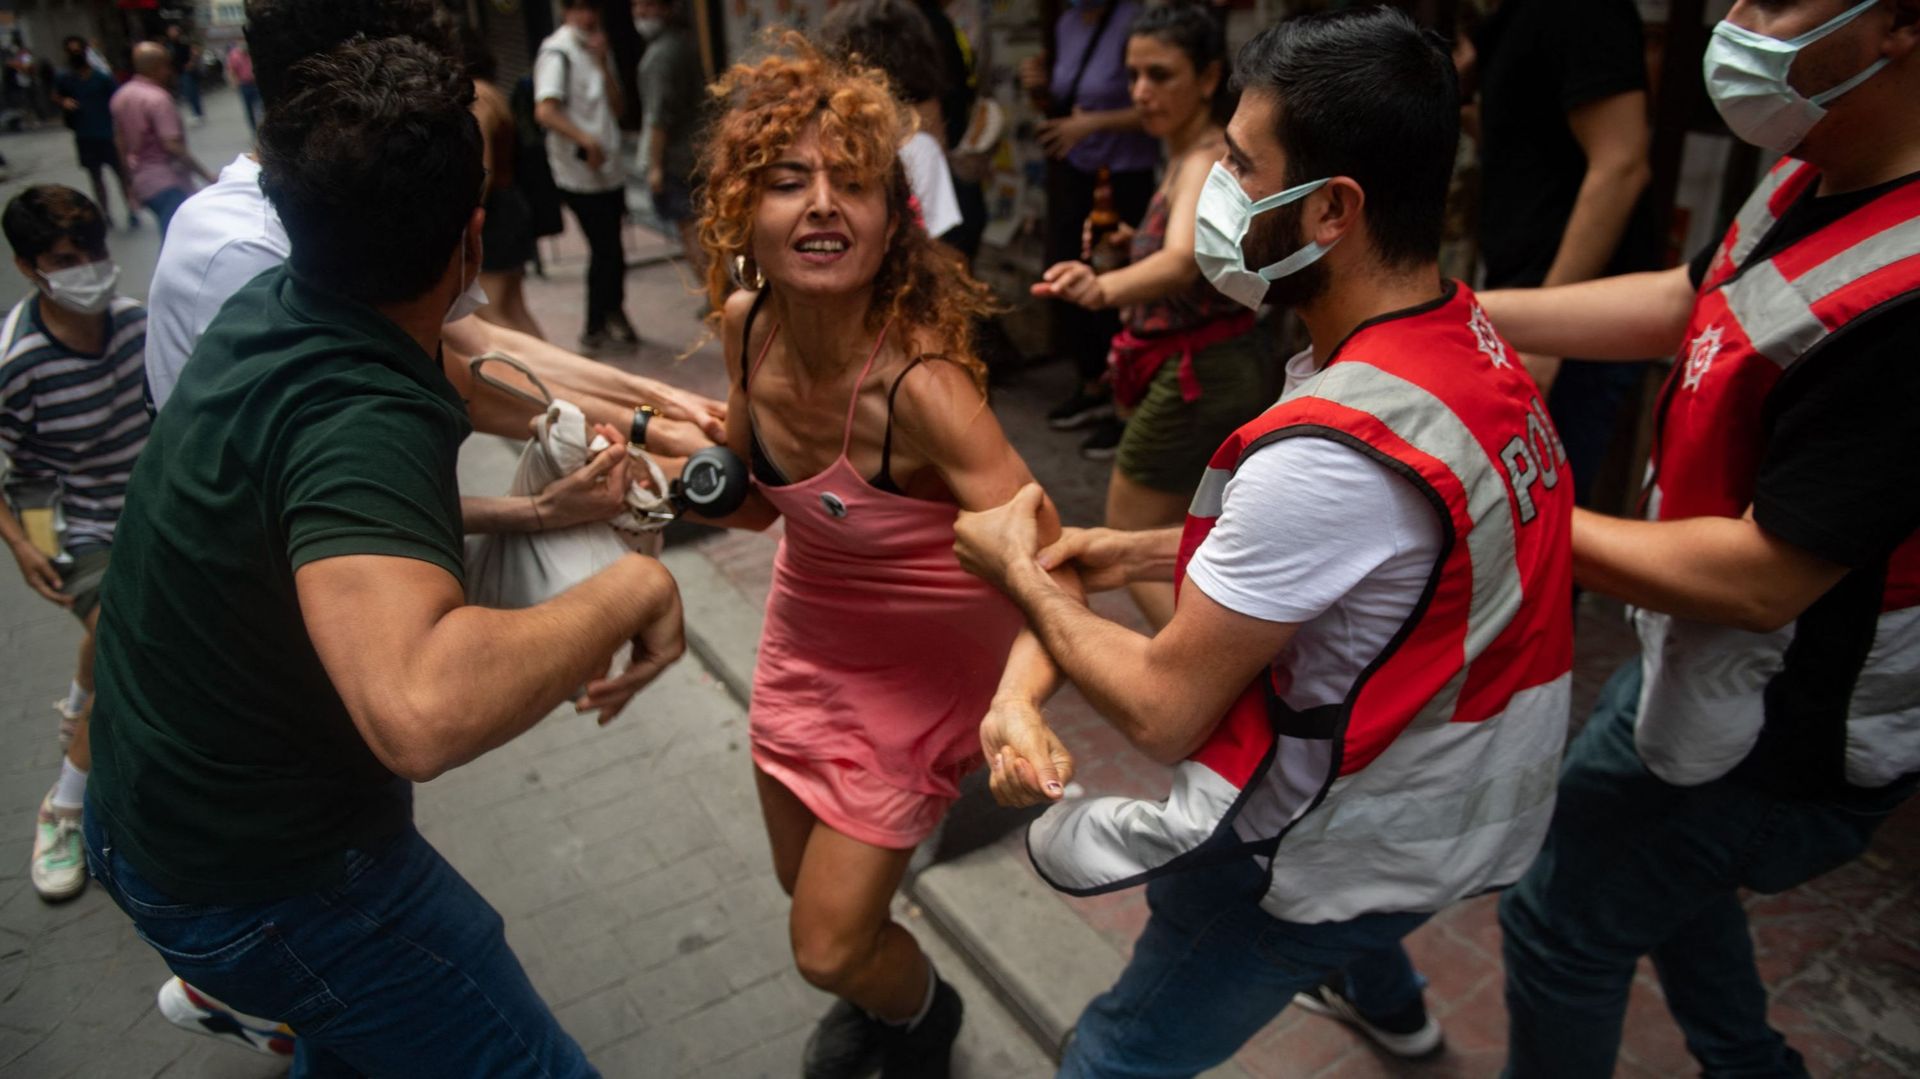 Des manifestants sont arrêtés par la police dans le centre d’Istanbul, le 26 juin 2021, alors que des centaines de militants LGTBI ont bravé une interdiction et tenté d’organiser une gay pride. Bulent KILIC / AFP